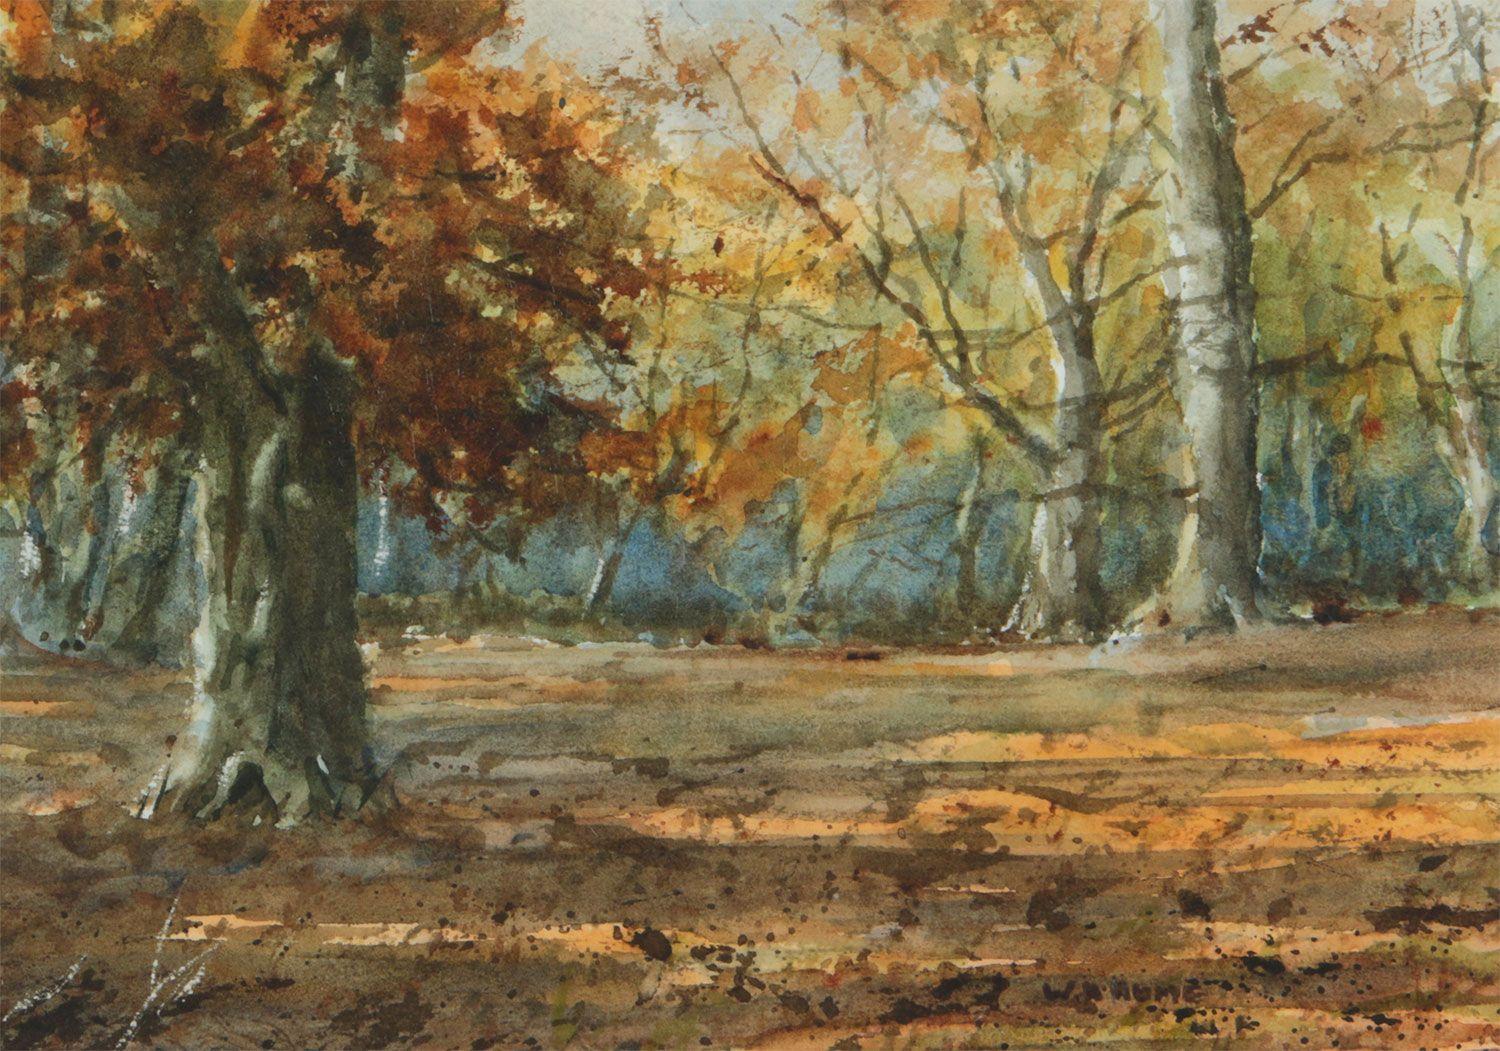 Aquarell aus dem 19. Jahrhundert mit herbstlichen Bäumen im nordirischen Wald, von William Hume, einem Künstler des 19. 

Kunst misst 11 x 8 Zoll 
Rahmen misst 17 x 13 Zoll 

Präsentiert in frischem, modernem Weiß mit weißem Passepartout 
Schönes